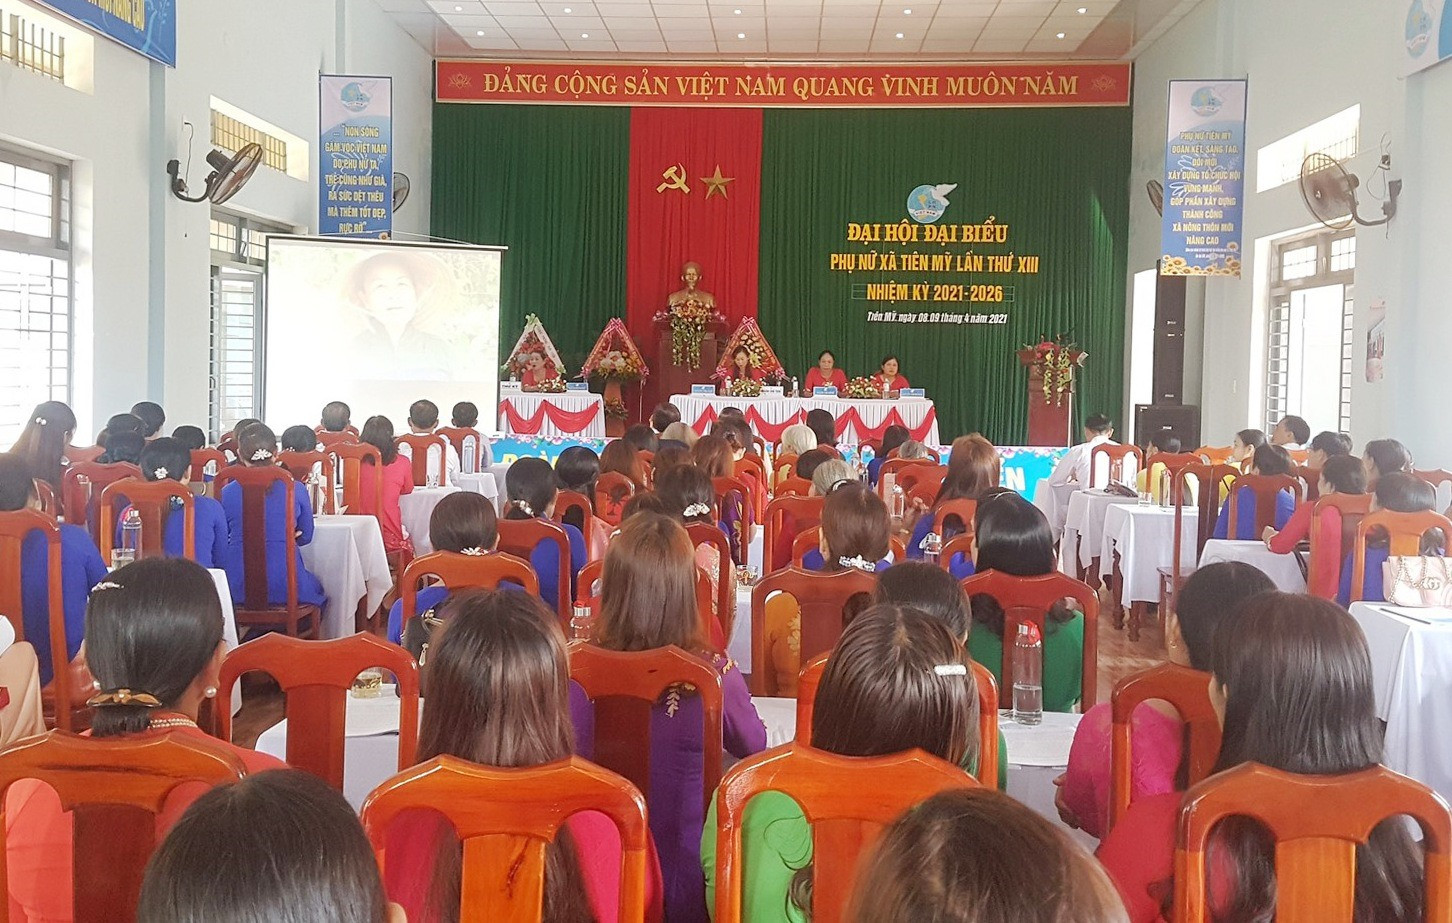 Đại hội đại biểu phụ nữ xã Tiên Mỹ diễn ra trong sáng nay 9.4. Ảnh: D.L